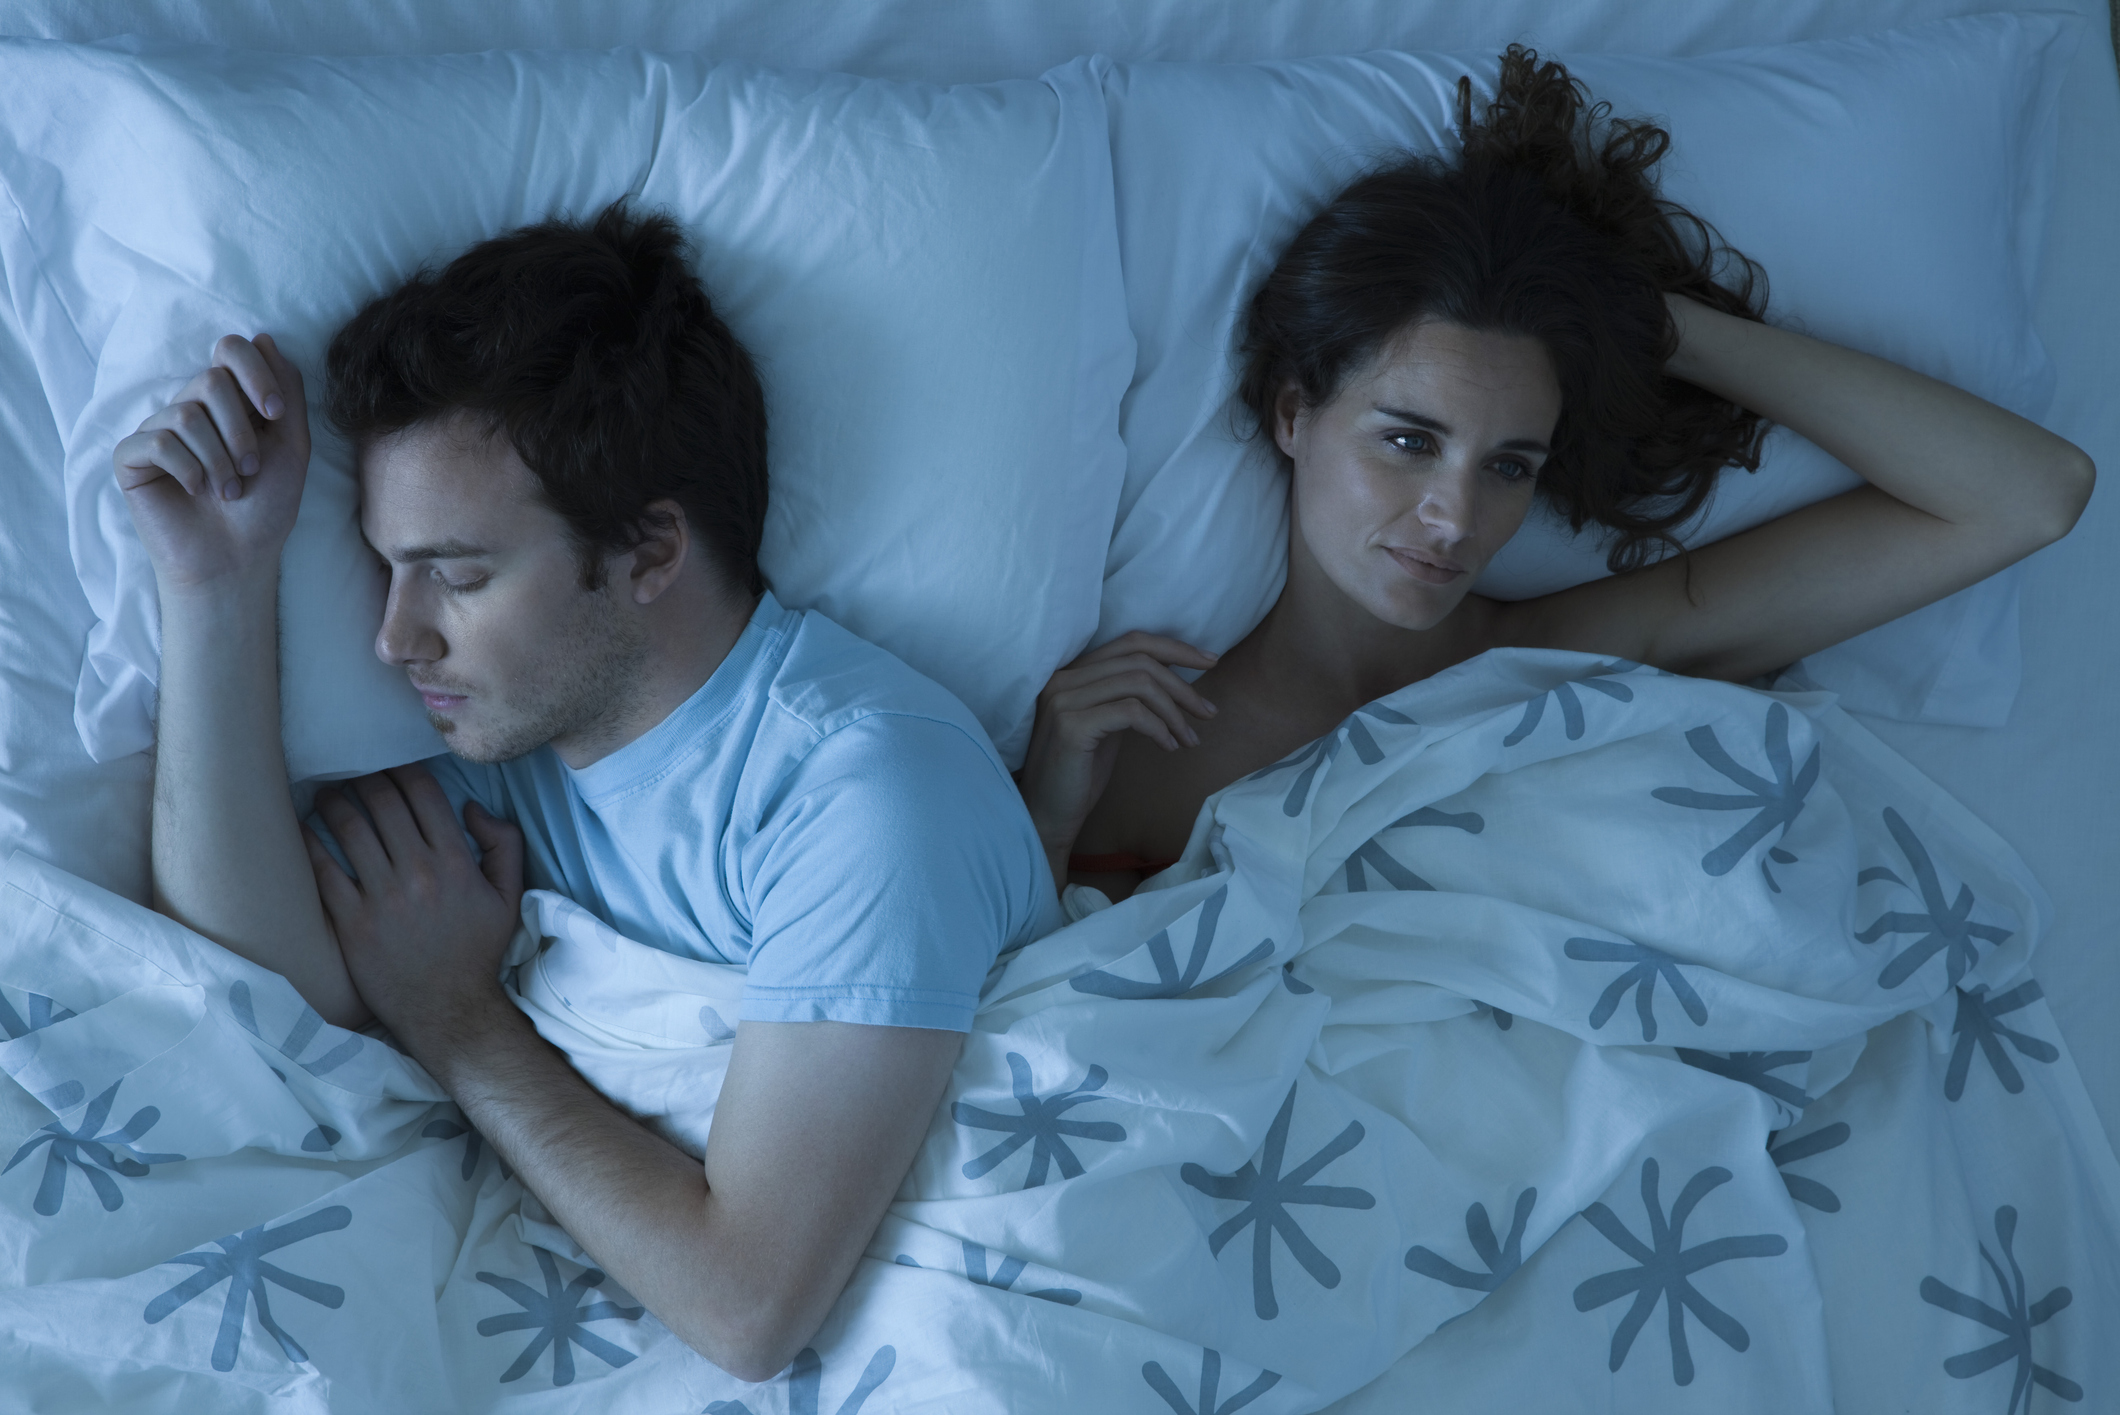 Una pareja tumbada en la cama y uno de los miembros está despierto debido a la pesadilla que ha tenido.